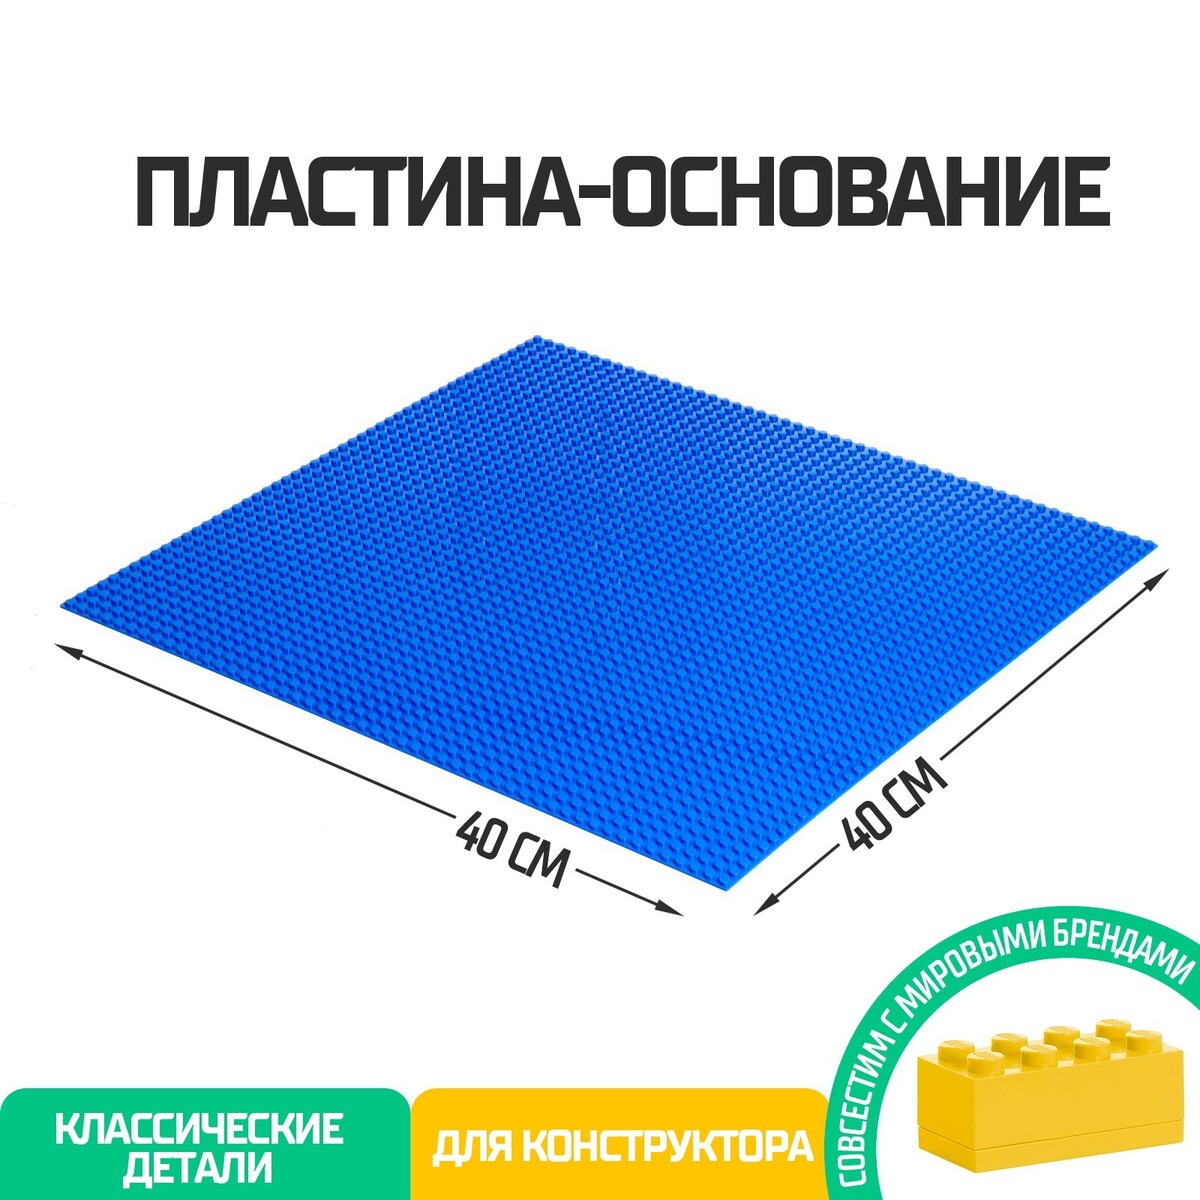 Пластина-основание для конструктора, 40 × 40 см, цвет синий пластина основание для конструктора 40 × 40 см серый